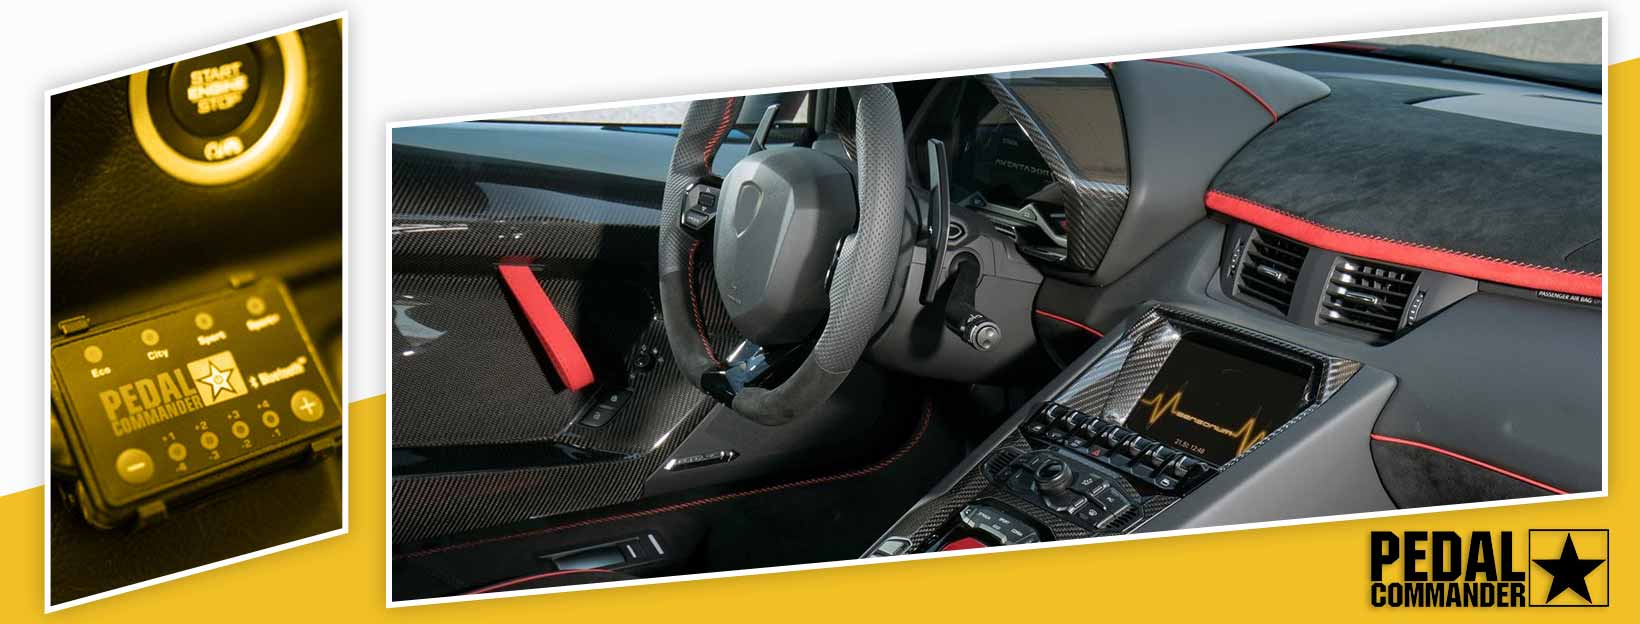 Pedal Commander for Lamborghini Gallardo - interior